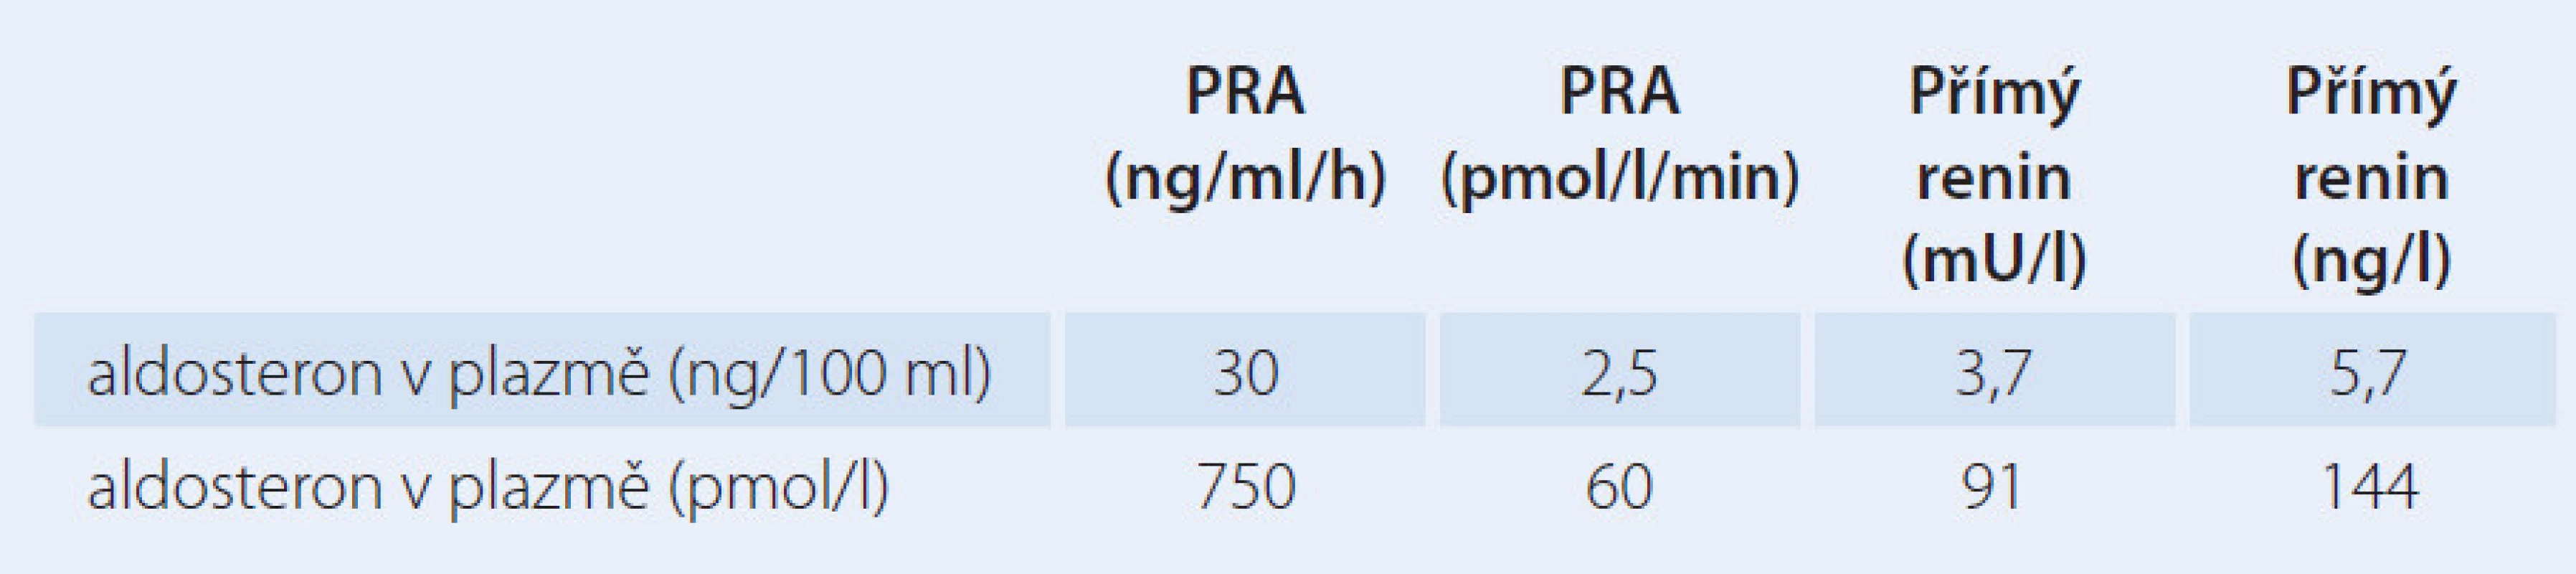 Diagnostická kritéria zvýšení poměru aldosteron/renin v závislosti na typu stanovení a použitých jednotkách. Použitý převodní faktor z plazmatické reninové aktivity (PRA) (ng/ml/h) na přímý renin (mU/l) je 8,2 (může být jiný v závislosti na typu stanovení).
Upraveno podle [21].